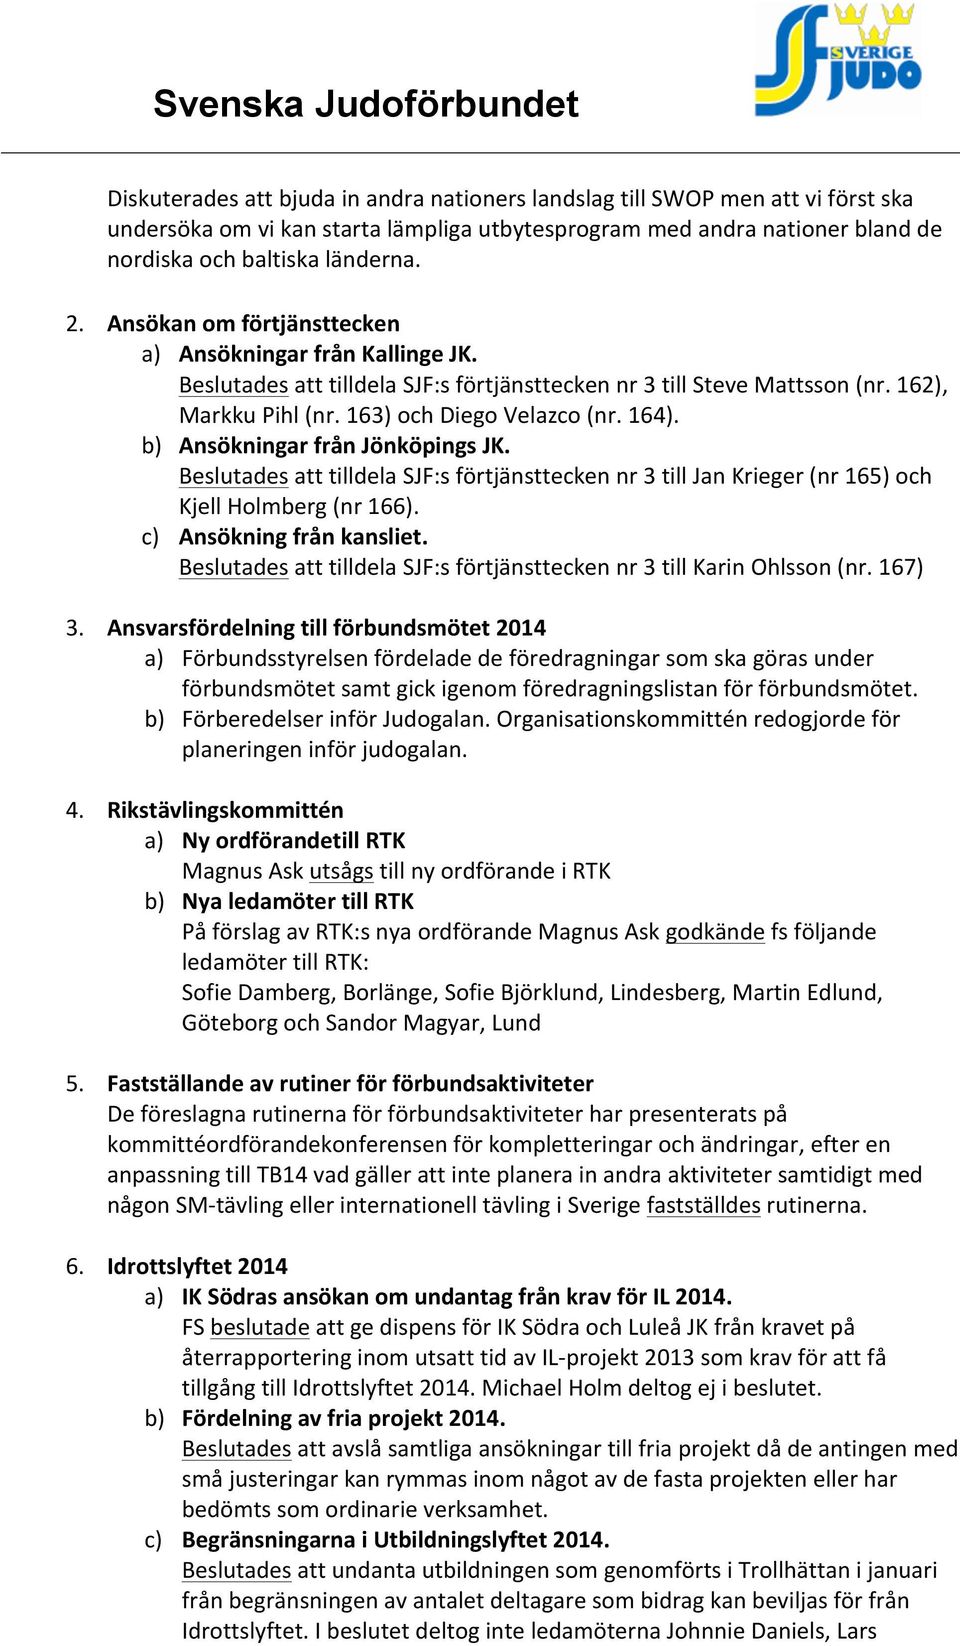 b) Ansökningar från Jönköpings JK. Beslutades att tilldela SJF:s förtjänsttecken nr 3 till Jan Krieger (nr 165) och Kjell Holmberg (nr 166). c) Ansökning från kansliet.